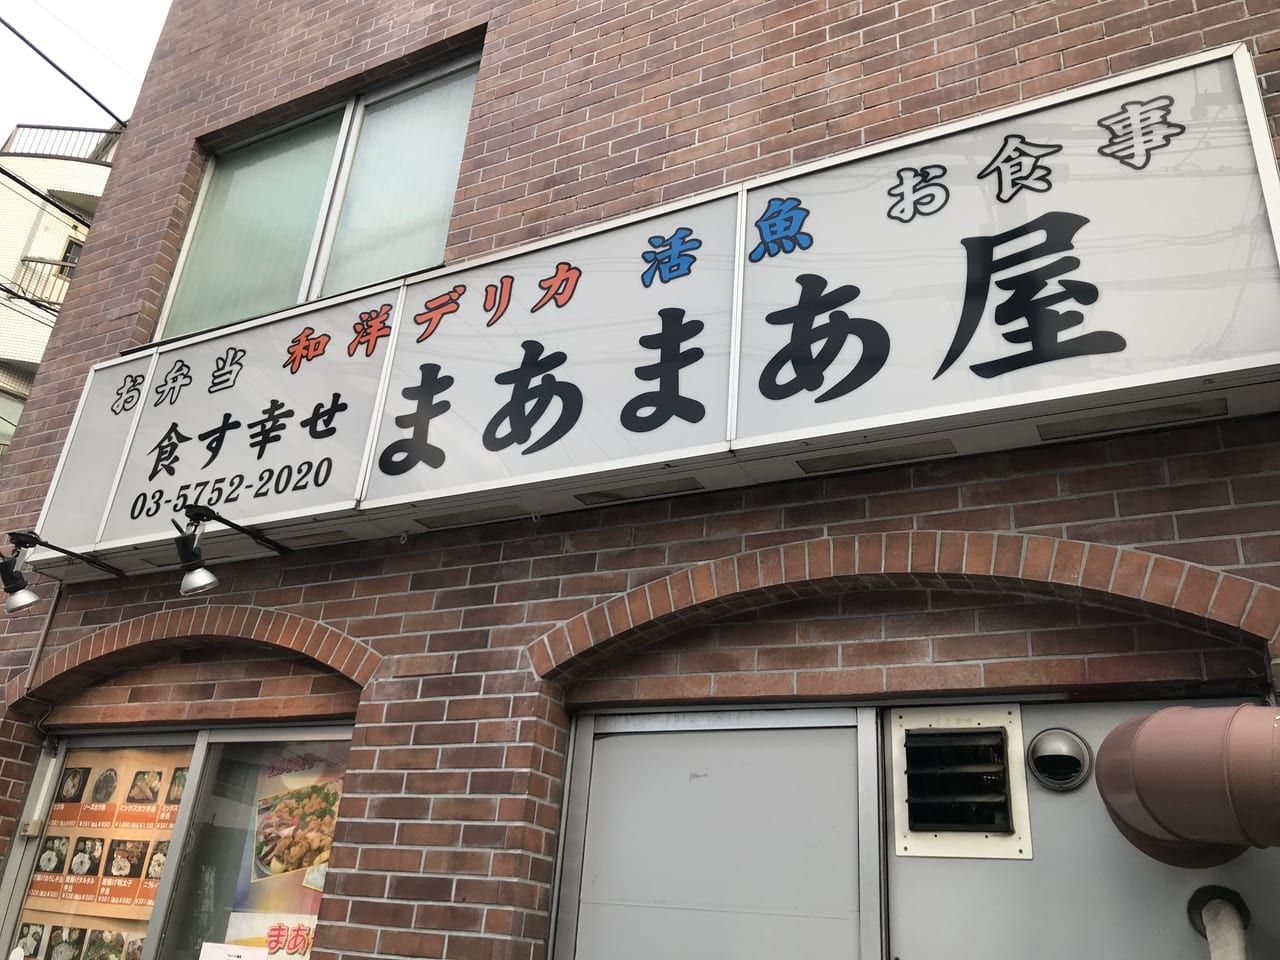 世田谷区深沢のお弁当屋さん幸せを食す「まあまあ屋」